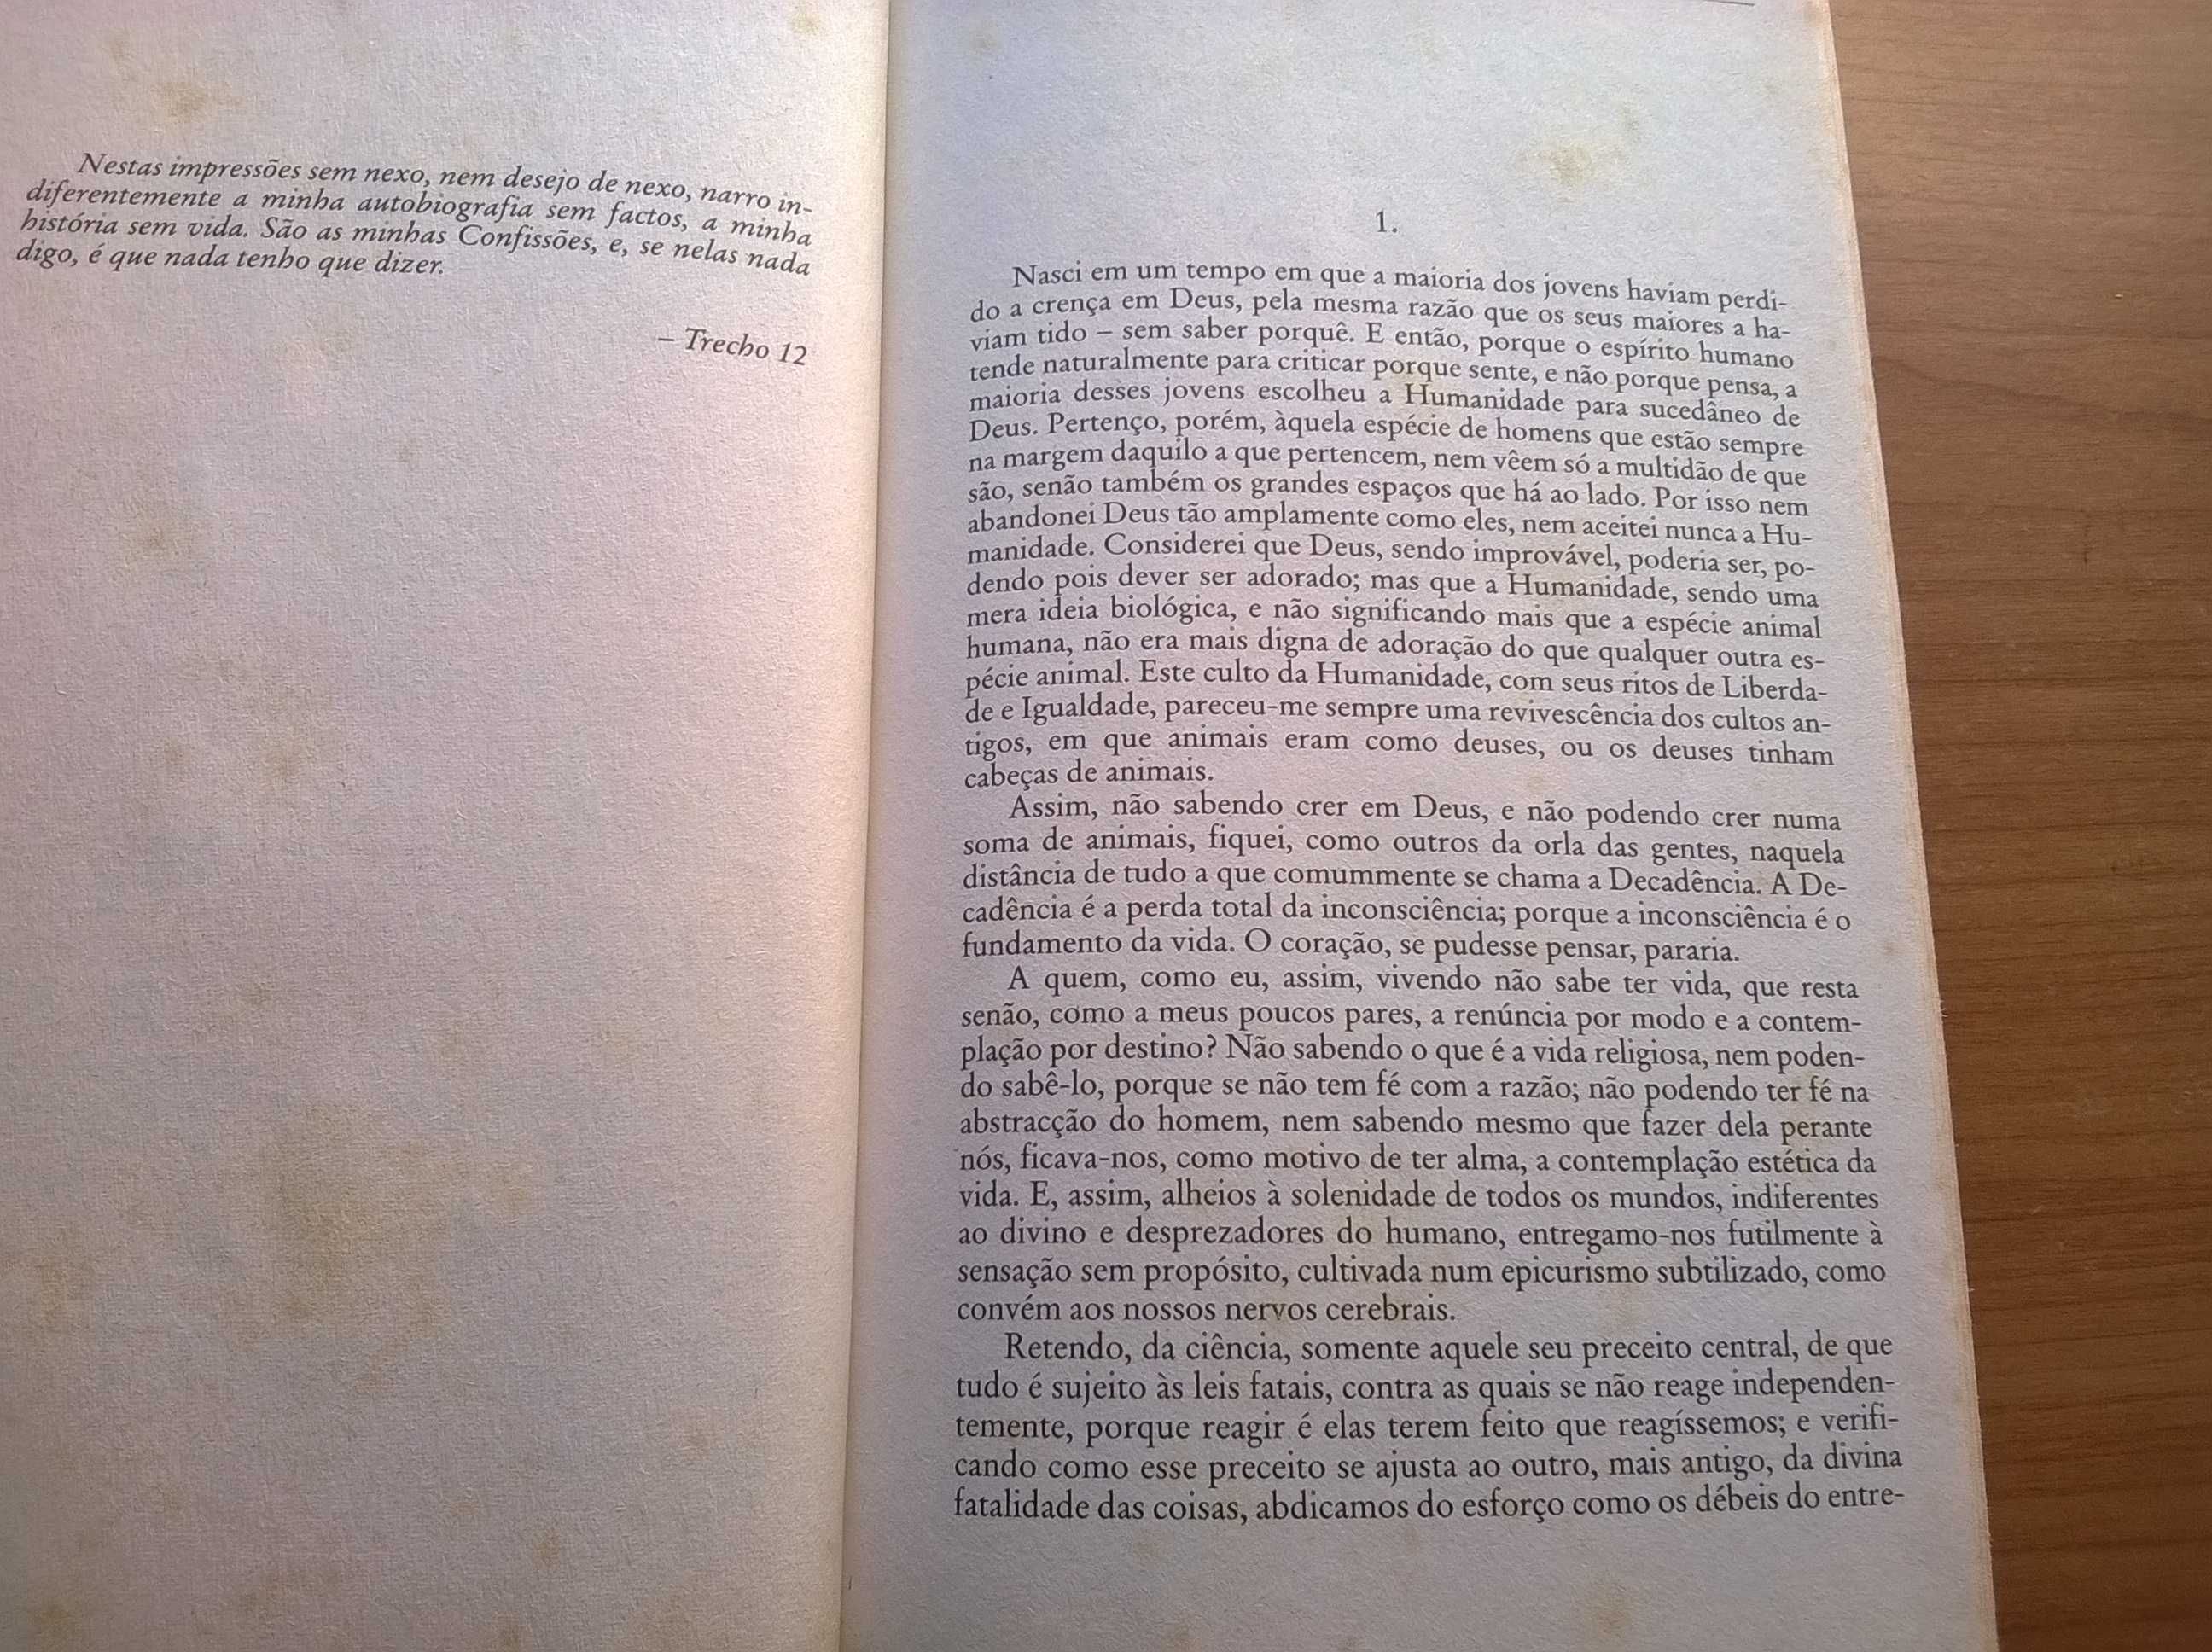 O Livro do Desassossego - Fernando Pessoa (portes grátis)